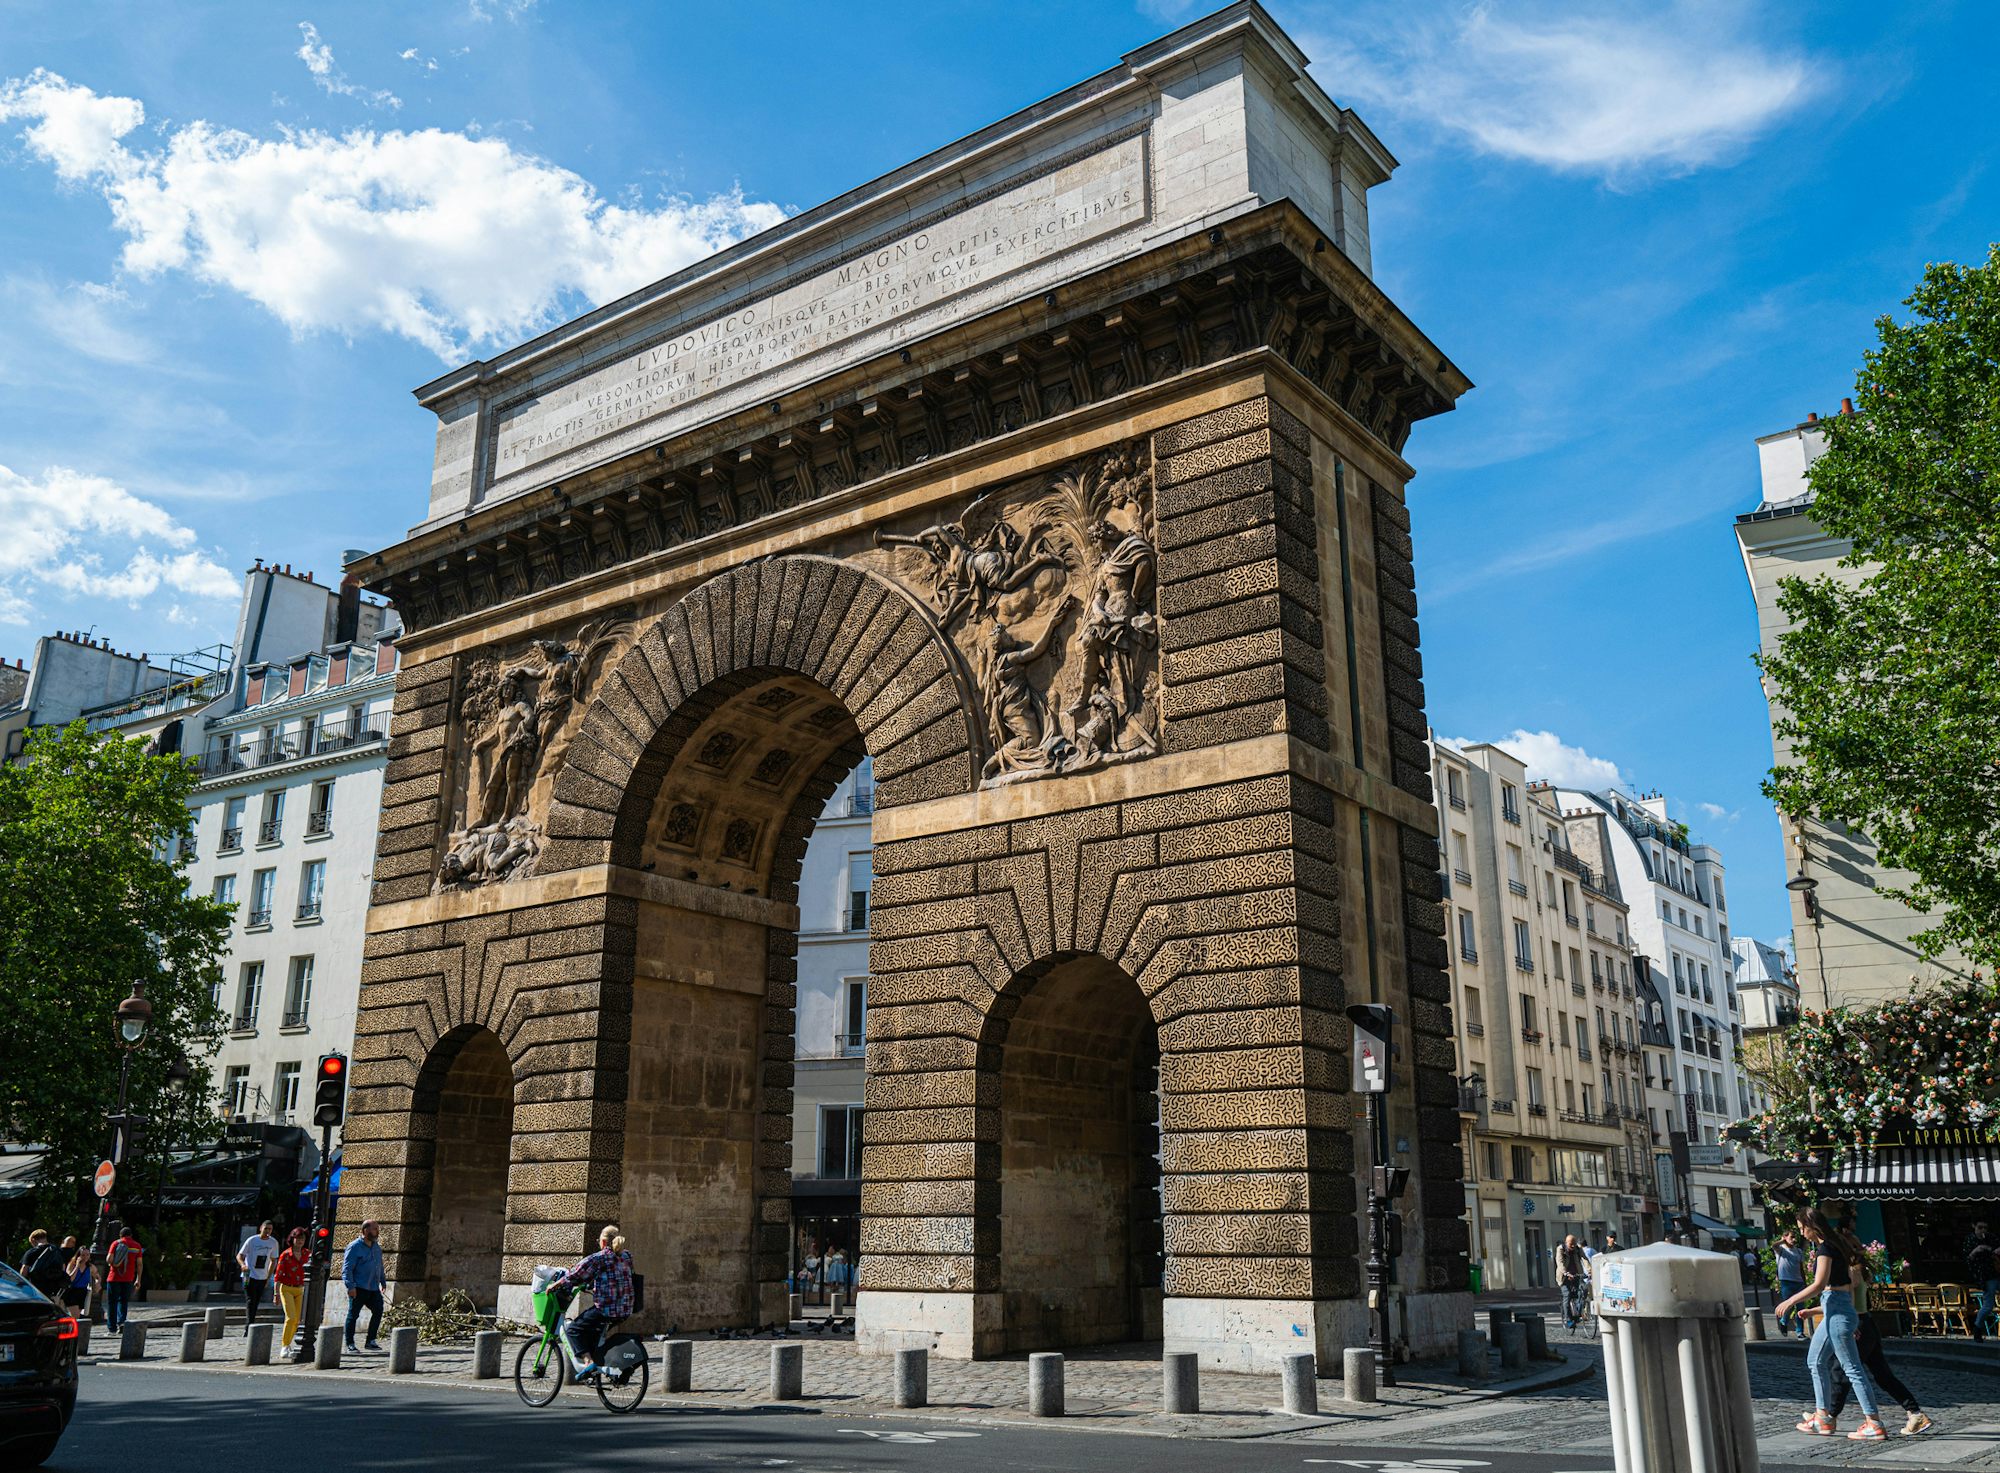 Porte Saint-Martin monument in Paris